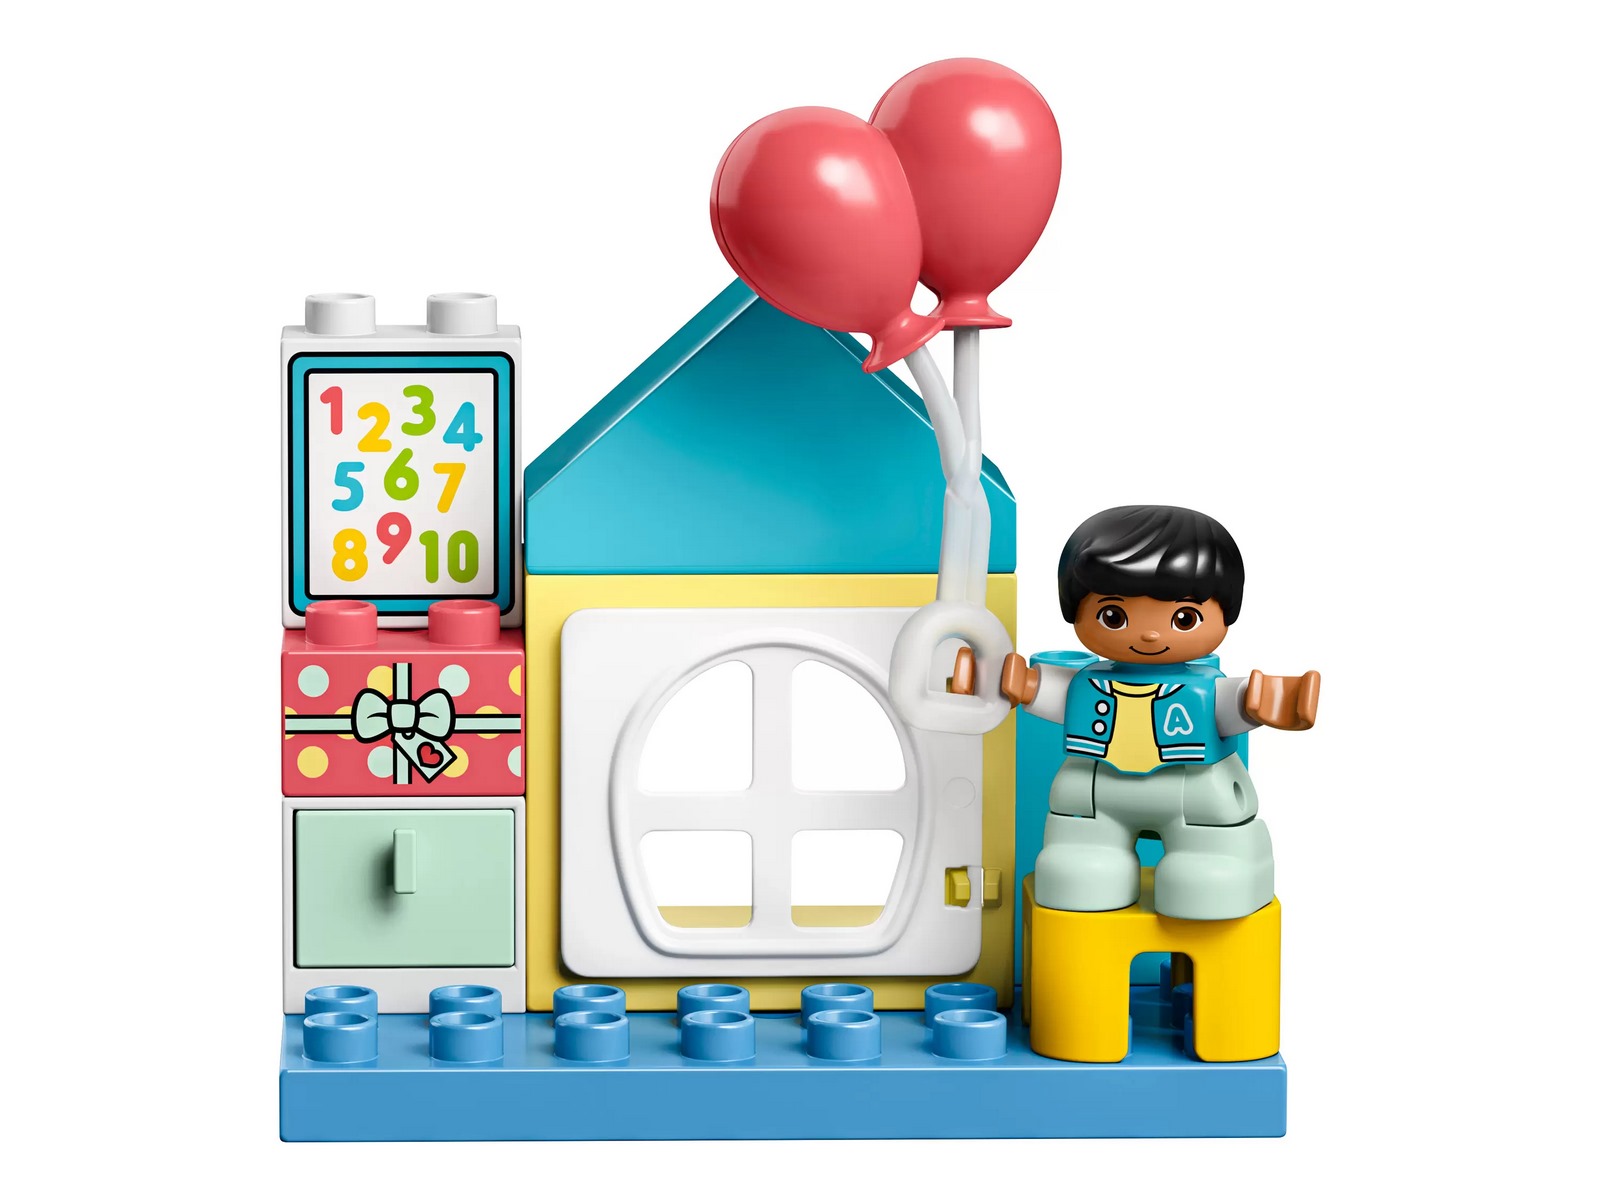 Конструктор LEGO Duplo Town «Игровая комната» 10925 / 17 деталей